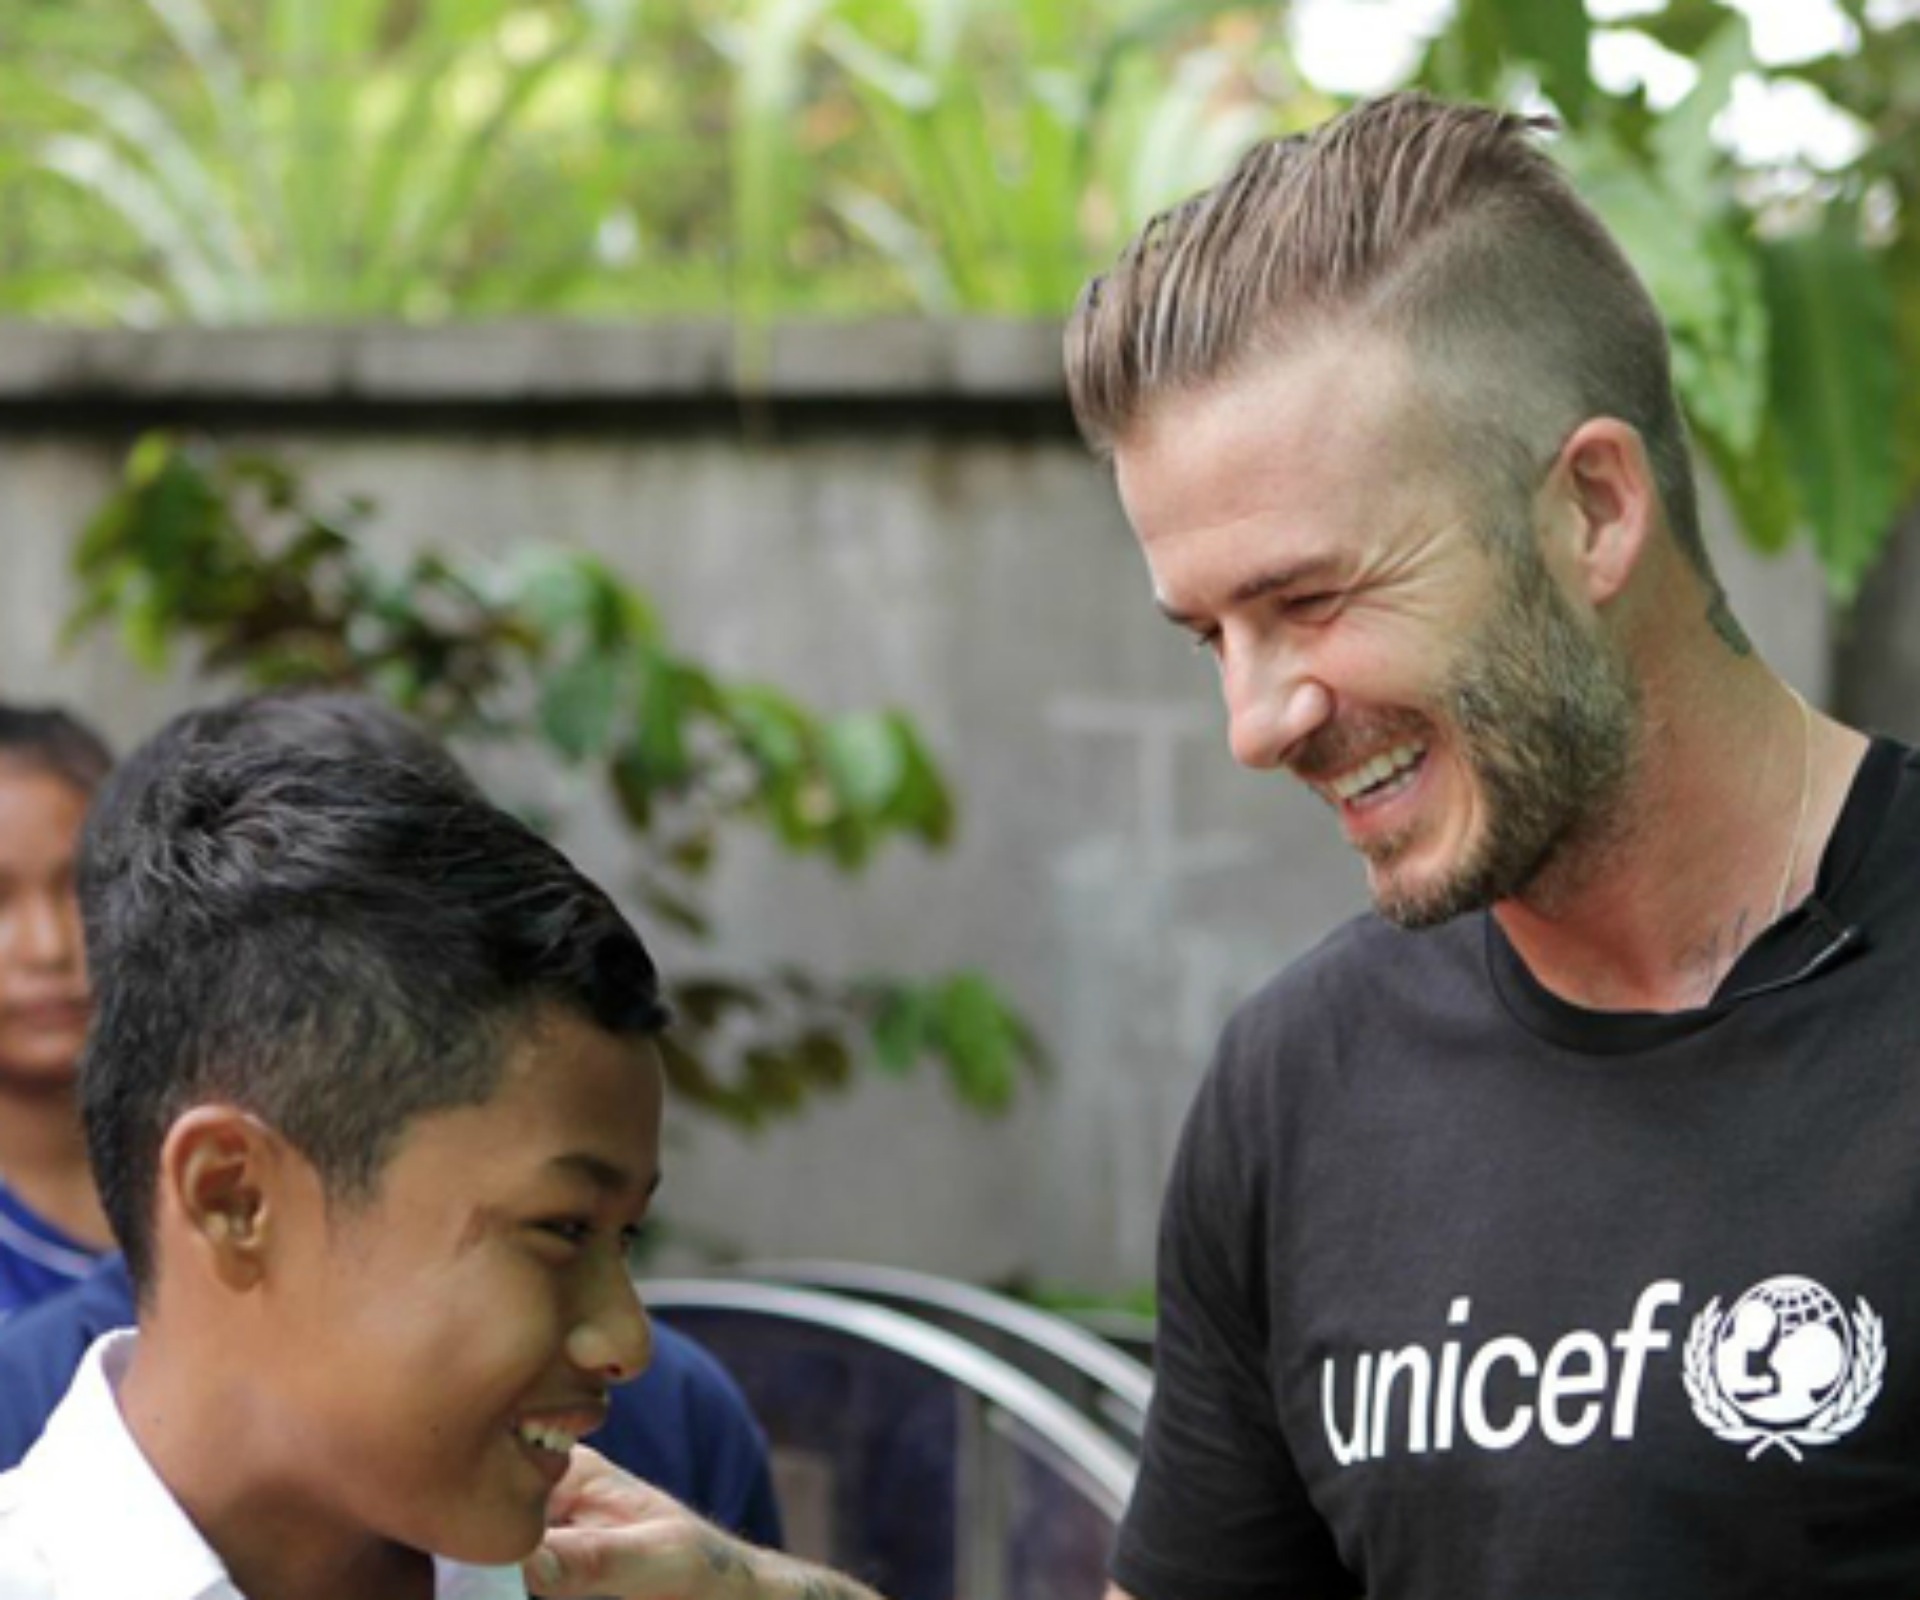 David Beckham: ‘No child should be in danger’